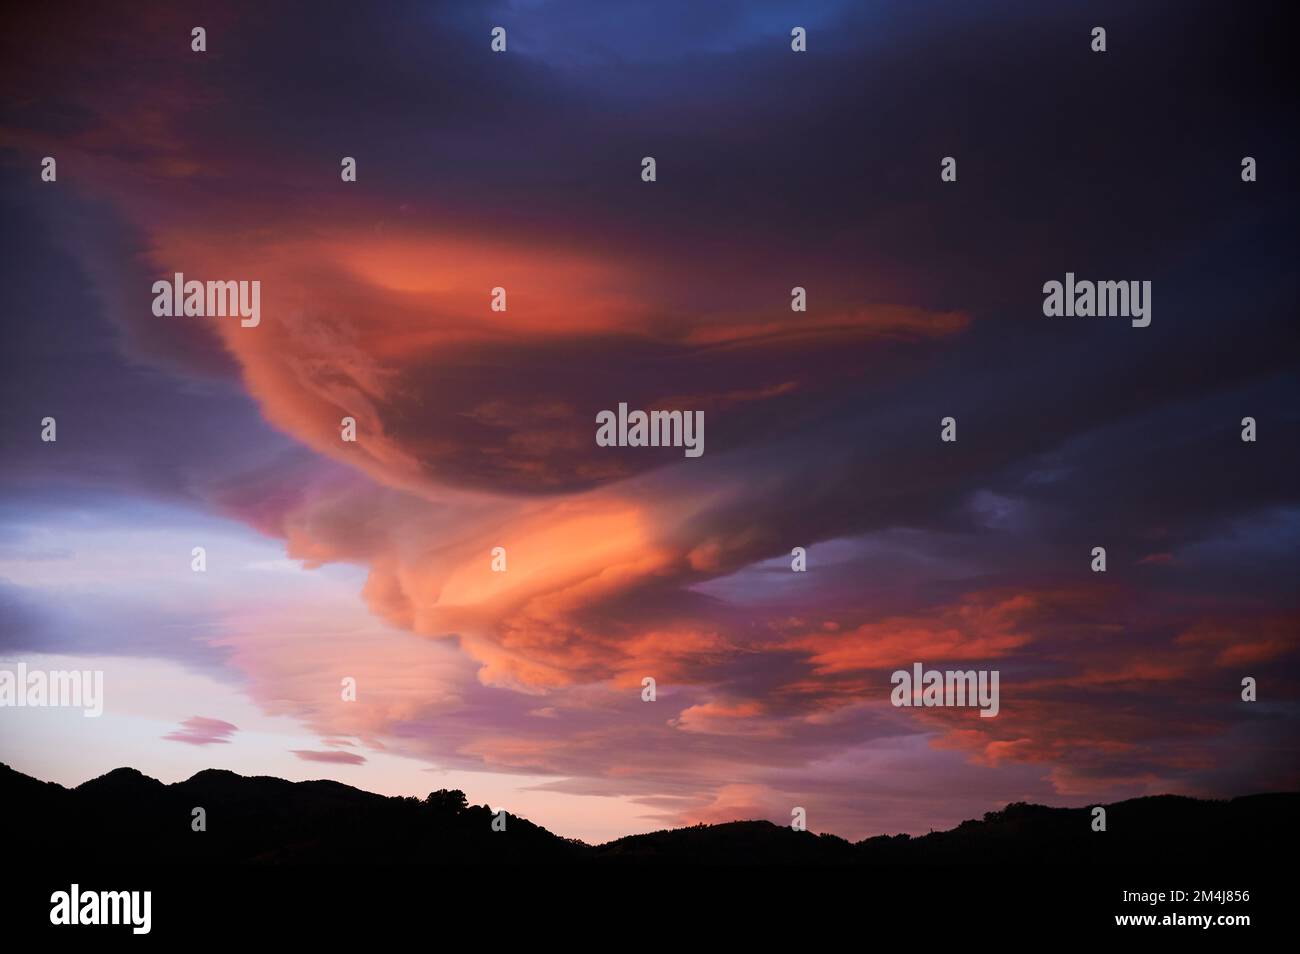 Sonnenaufgang mit einem Himmel voller wunderschöner Wolken mit Blau- und Orangenfarben, die einen Wirbel bilden Stockfoto